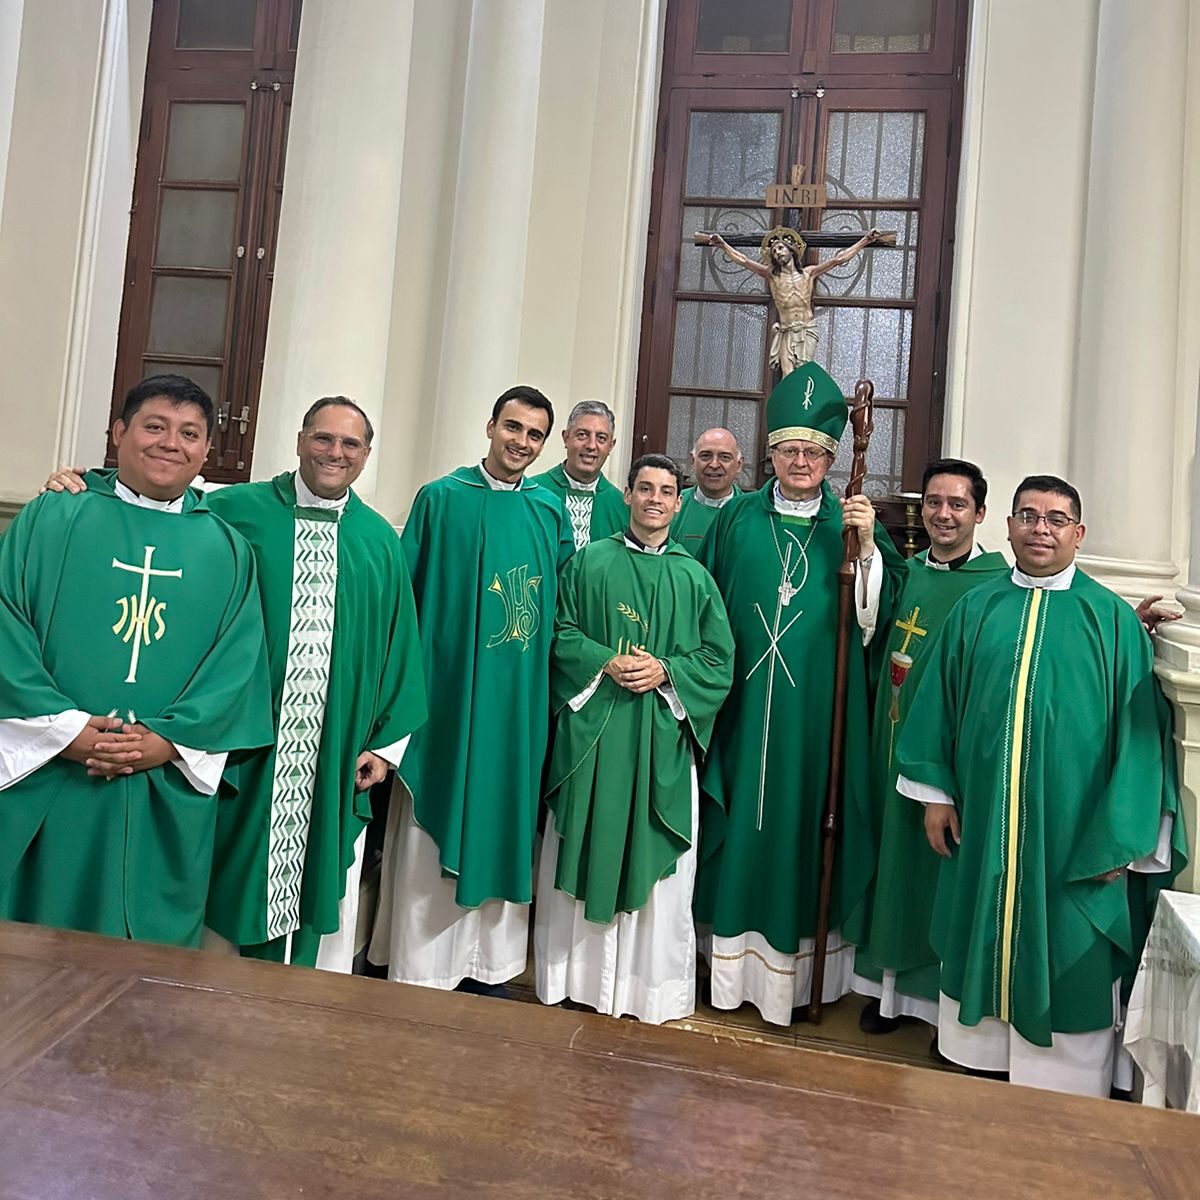 Reunión de sacerdotes de la Región Norte